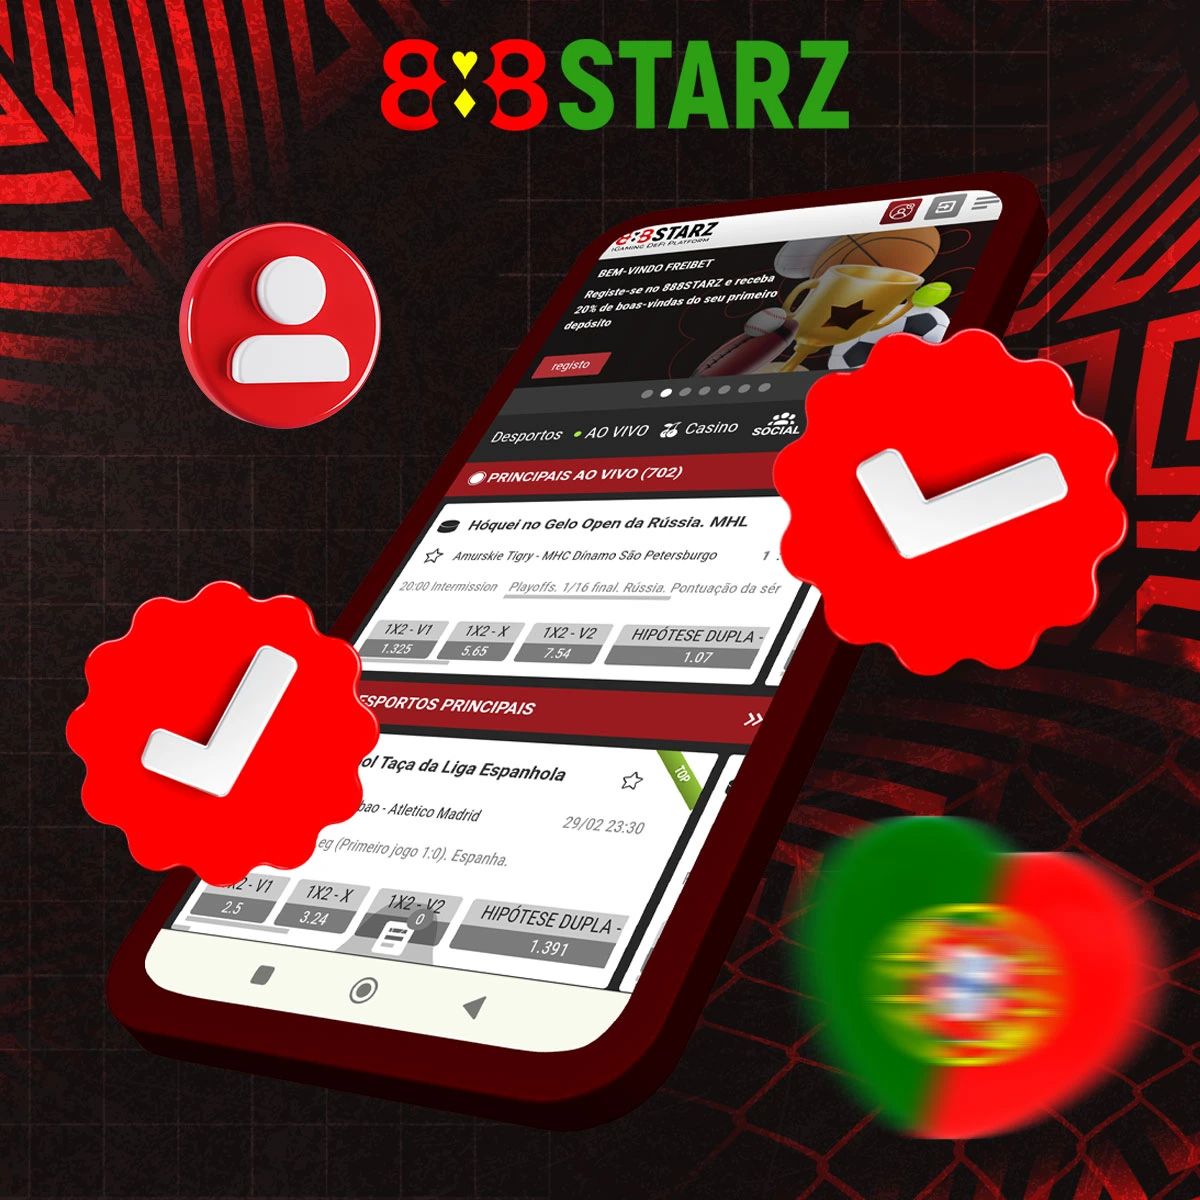 Como é que faço a verificação na plataforma 888Starz?